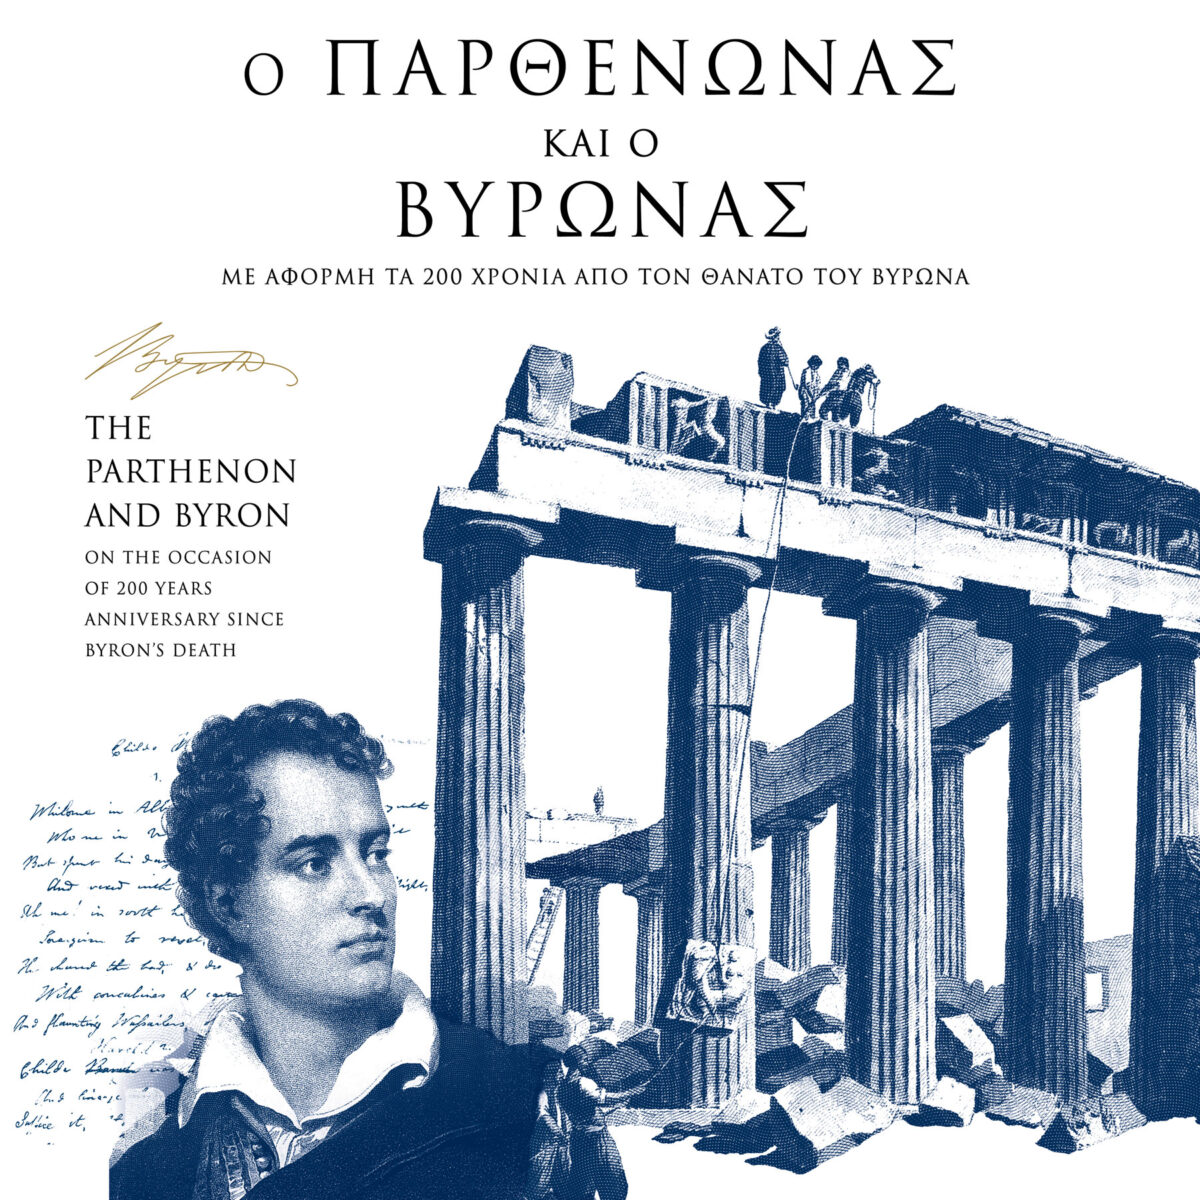 Η αφίσα της έκθεσης. Πηγή εικόνας: Μουσείο Ακρόπολης.